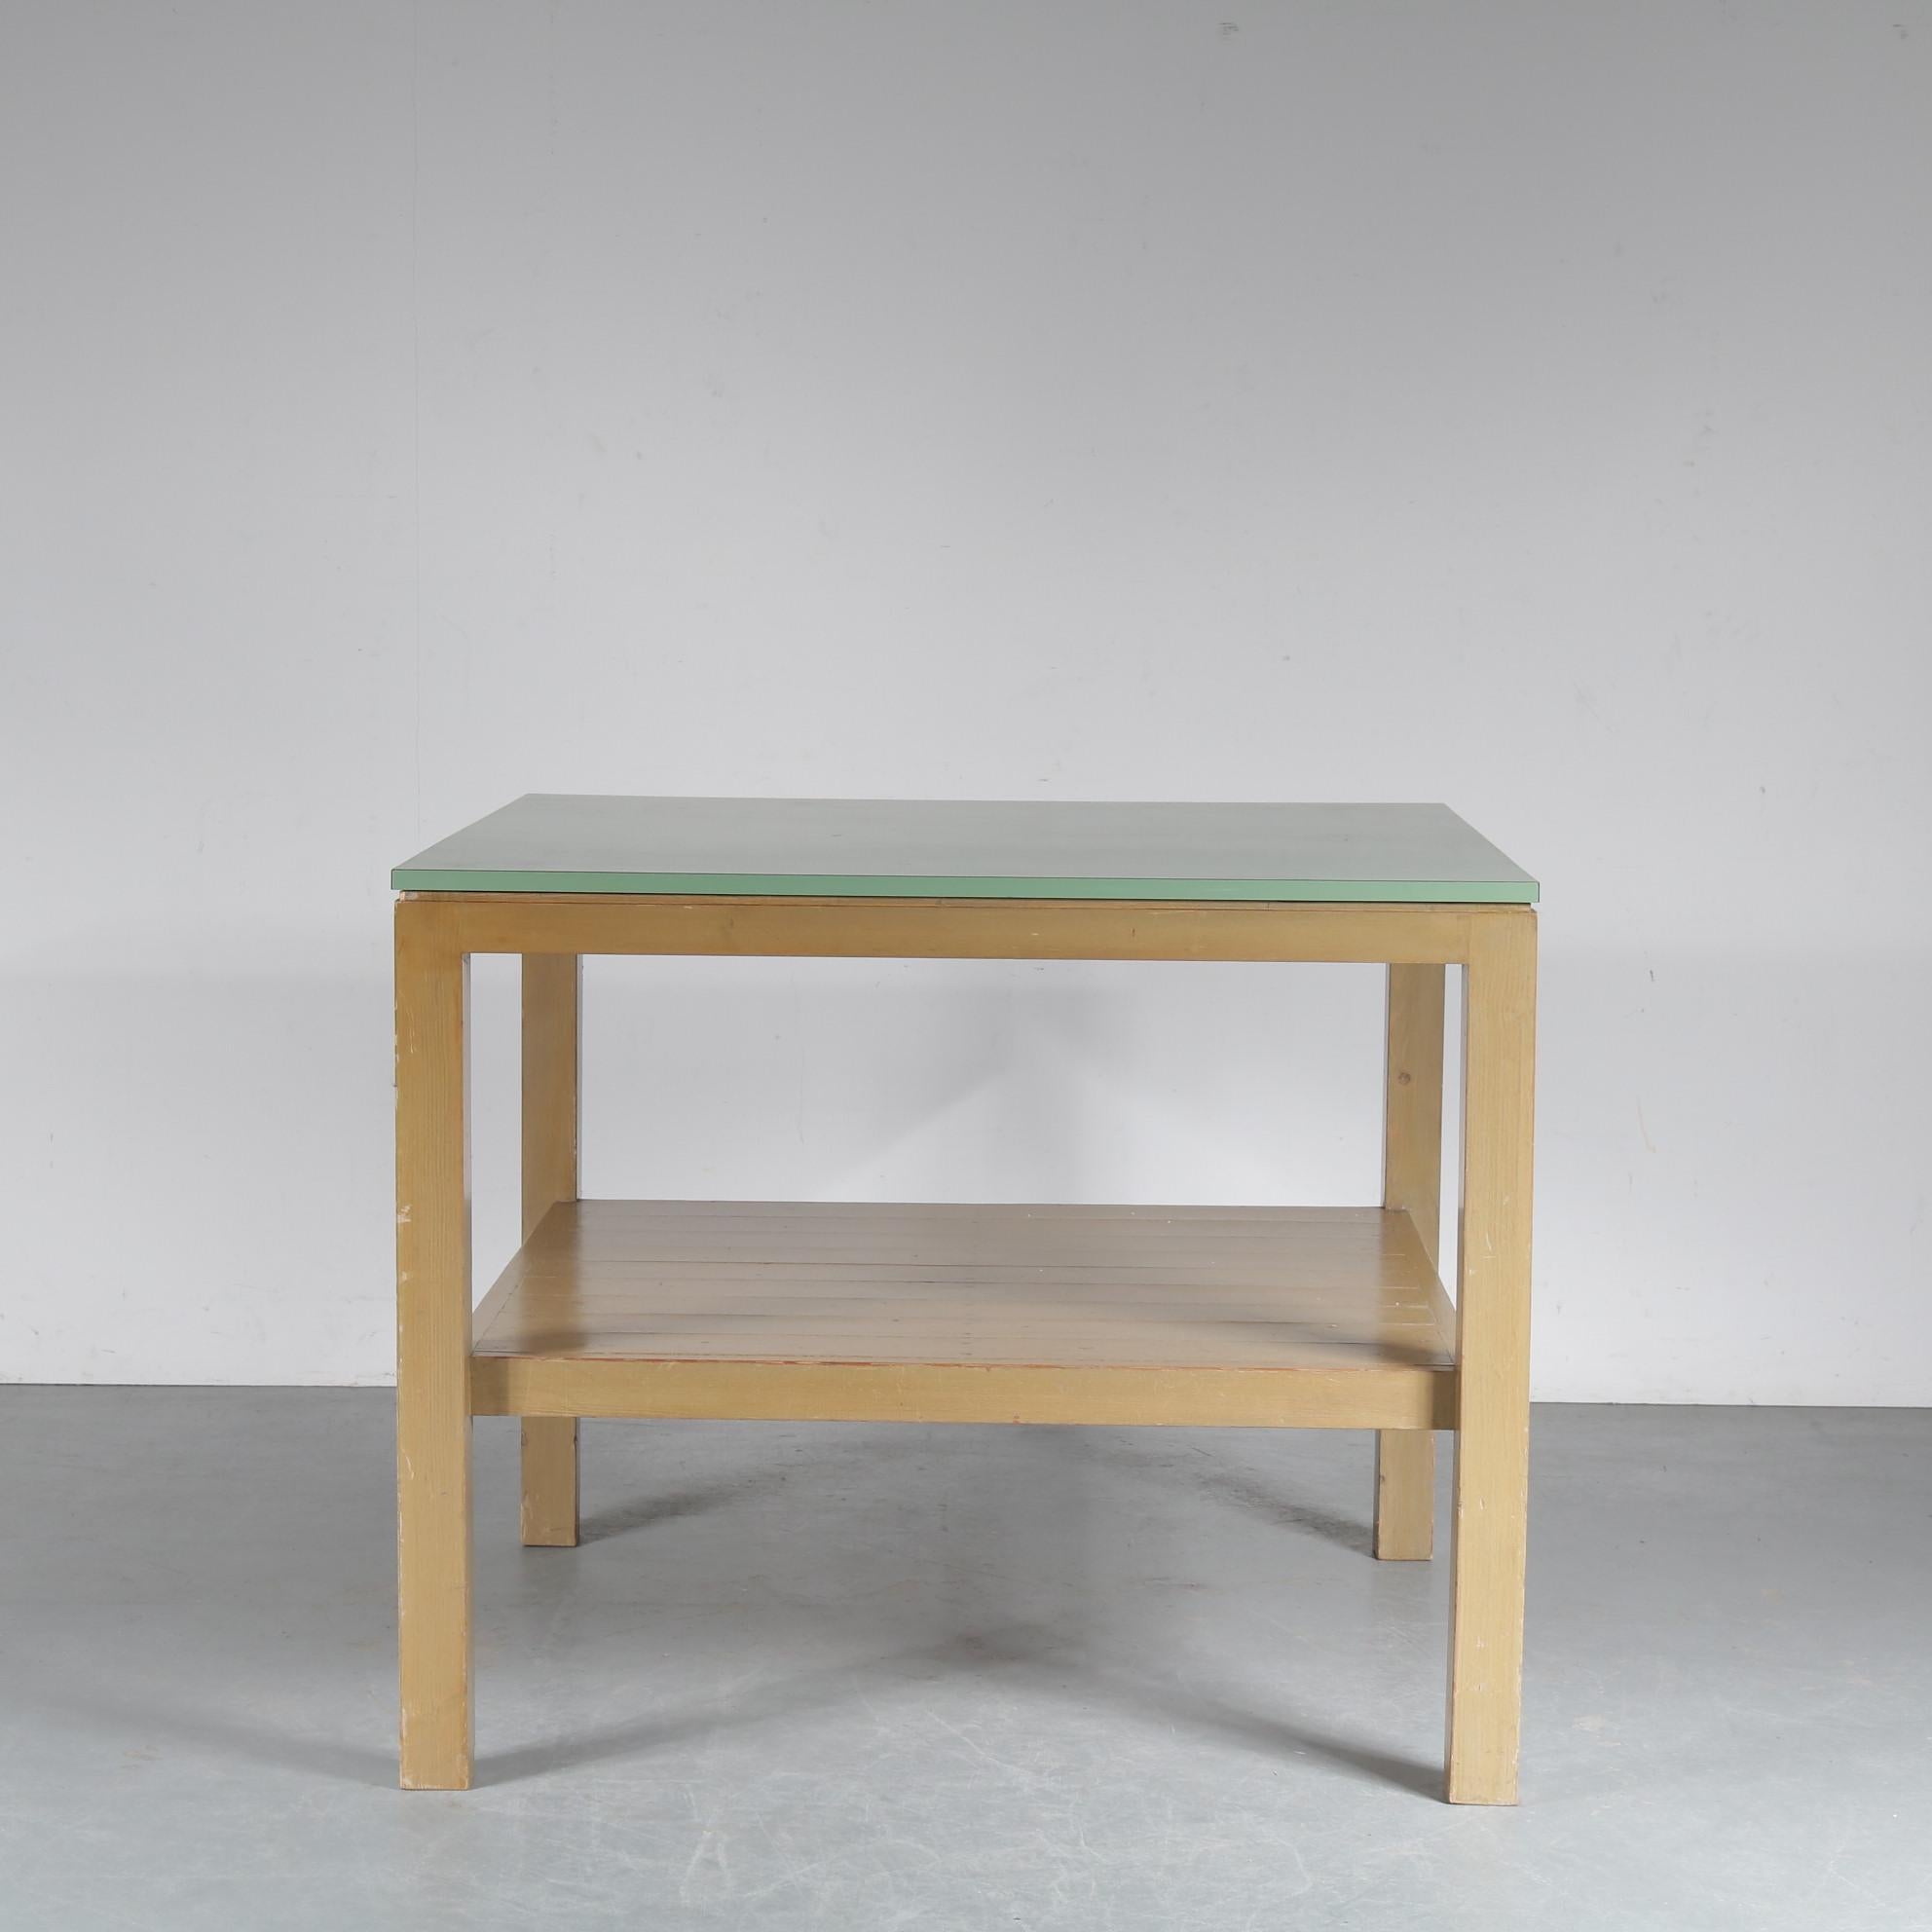 Une table de travail rare conçue par Dom Hans van der Laan aux Pays-Bas dans les années 1970.

Son design minimaliste et accrocheur est très reconnaissable et le style de l'école Bossche, dans lequel il a été conçu, fait partie de l'histoire du